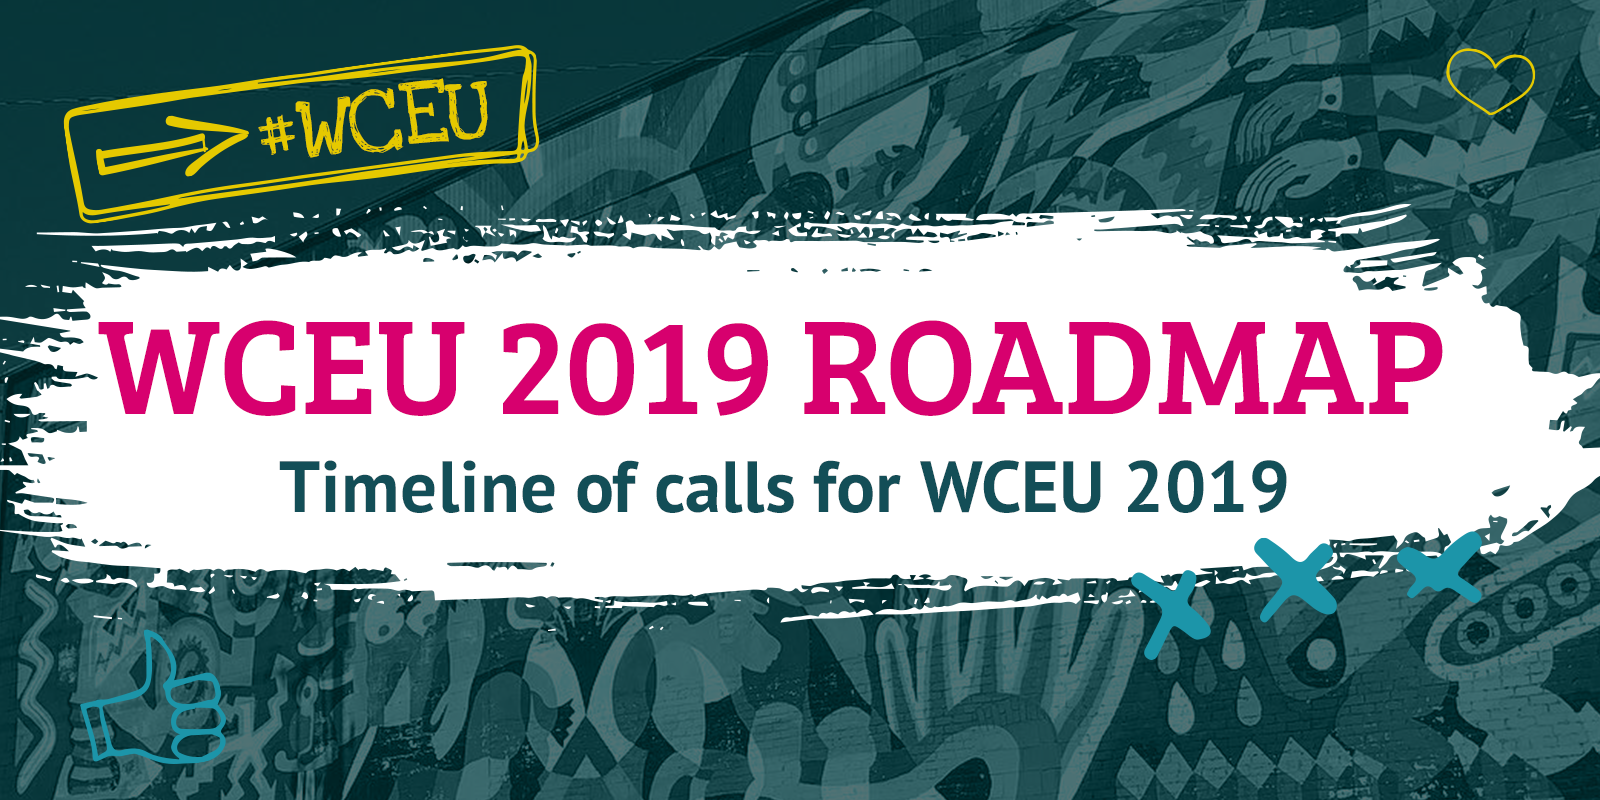 WCEU 2019 roadmap of key dates